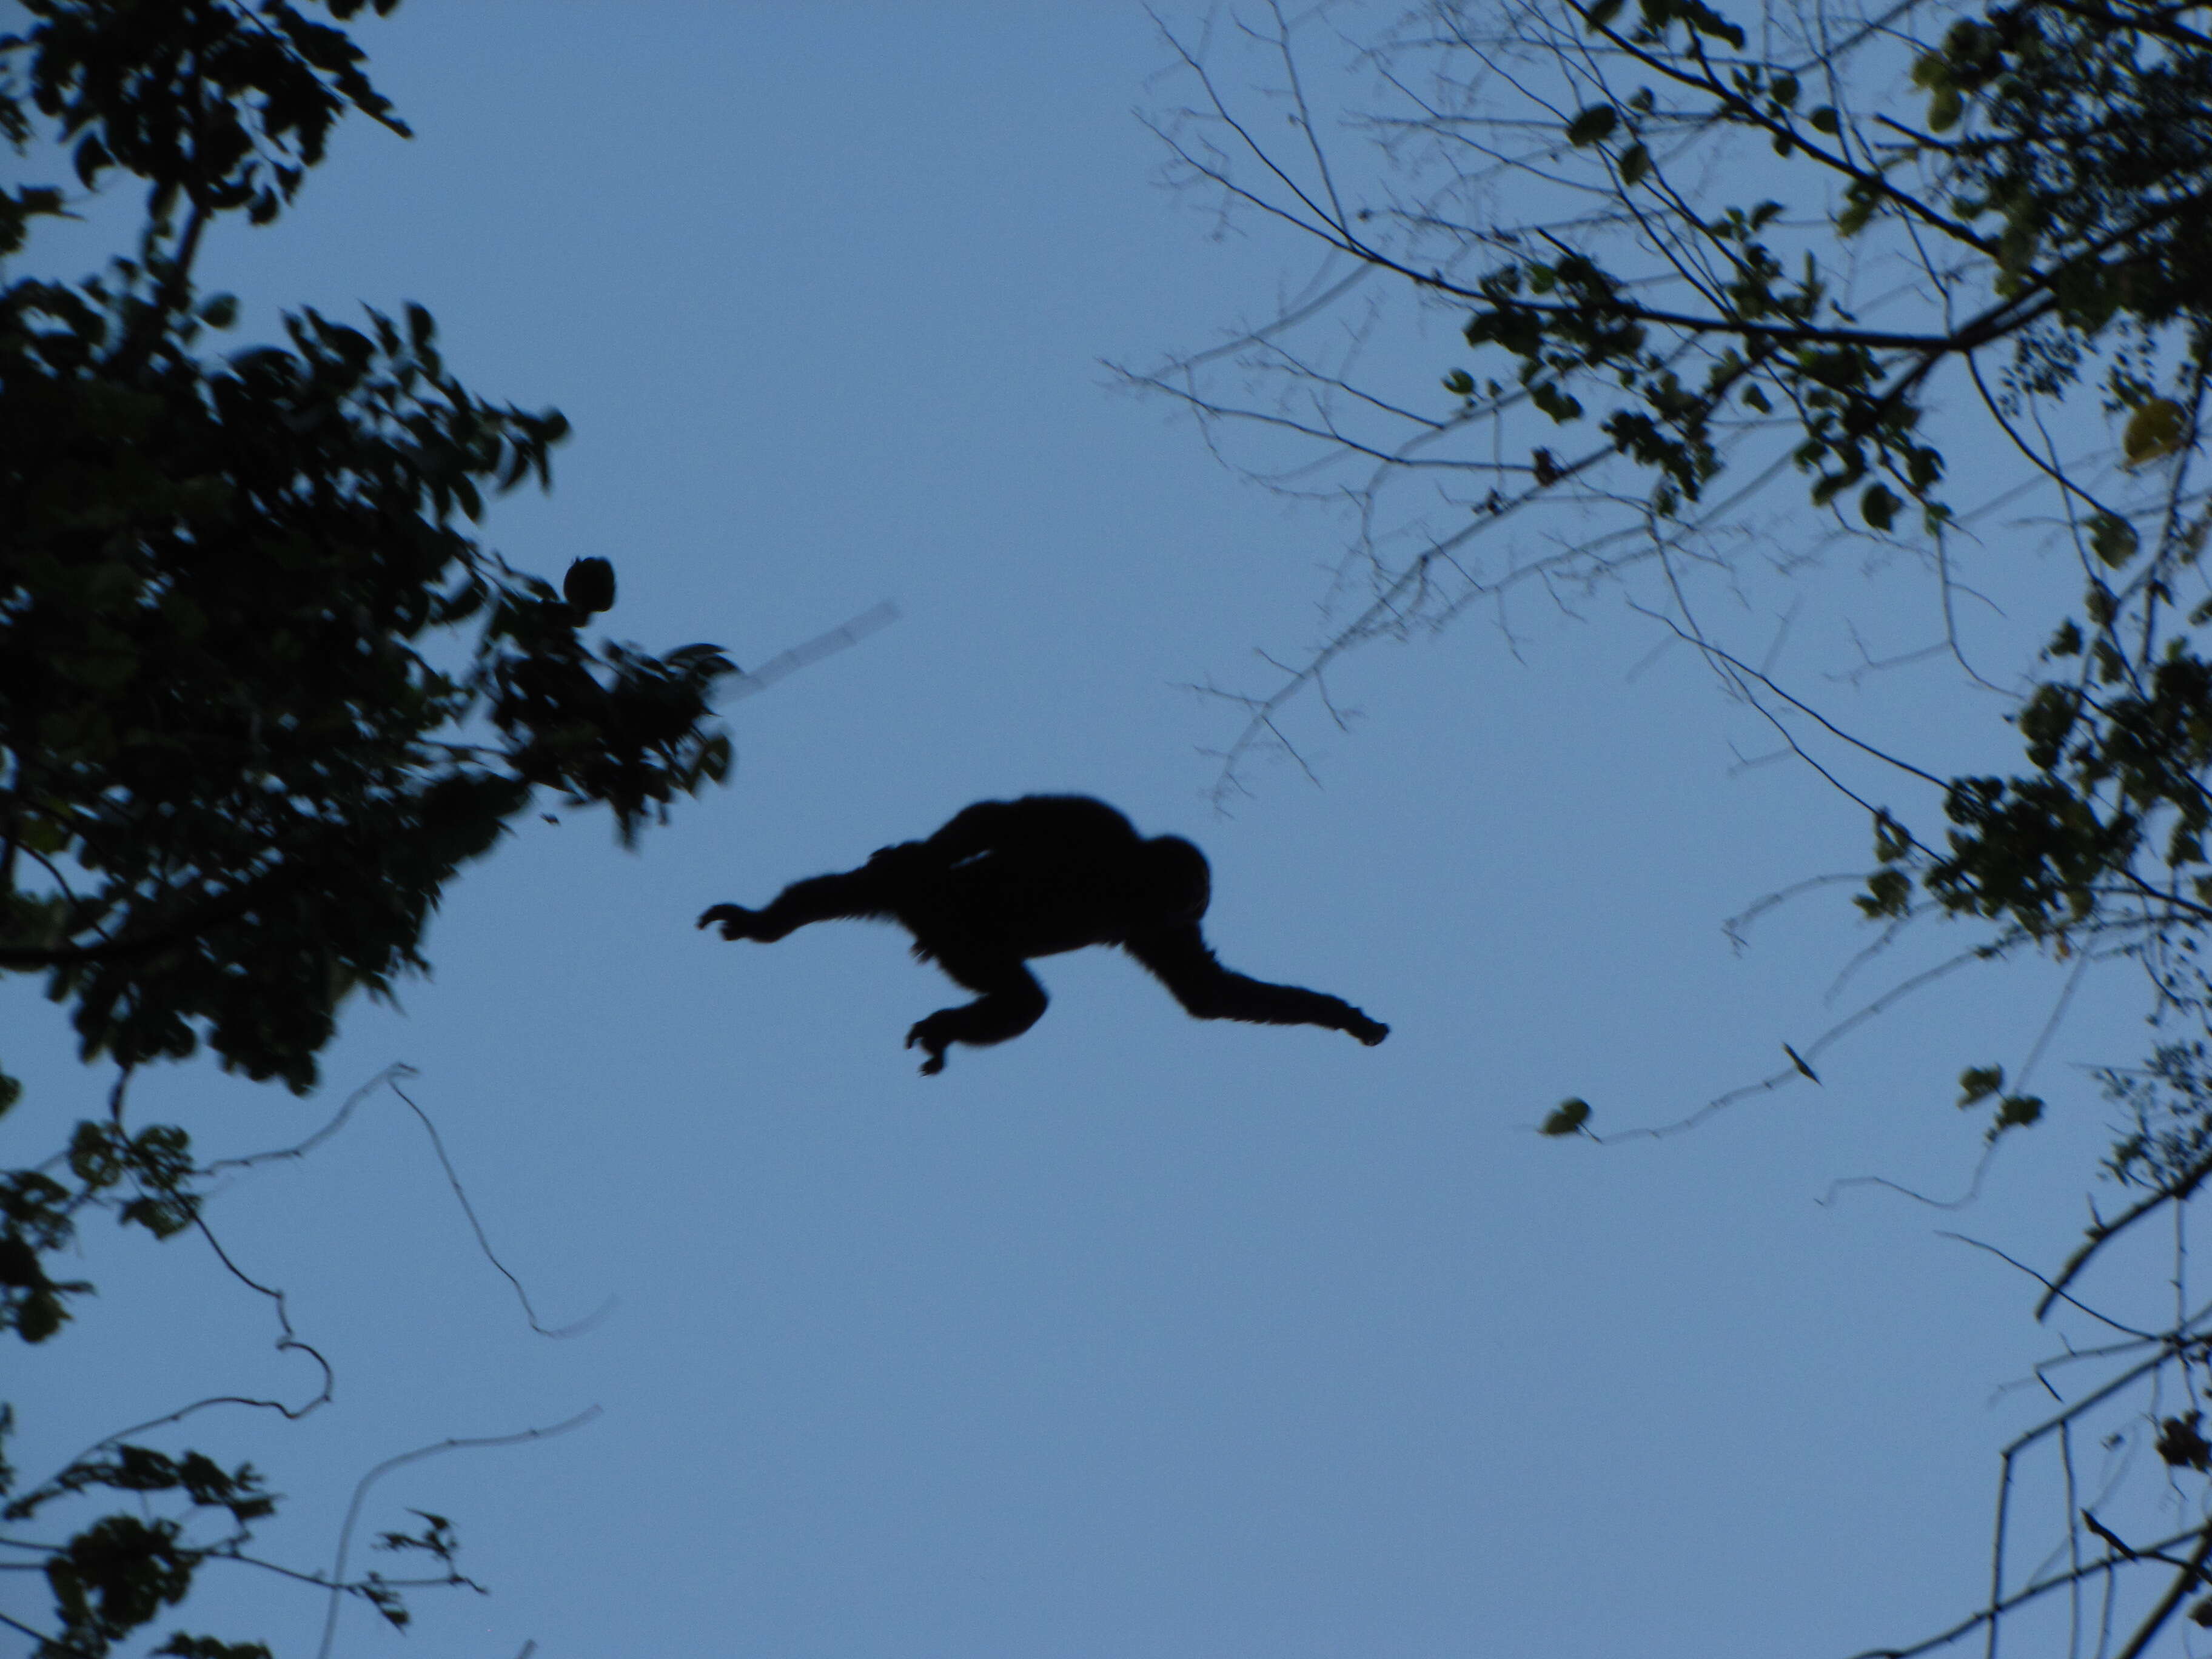 Image of Eastern Hoolock Gibbon